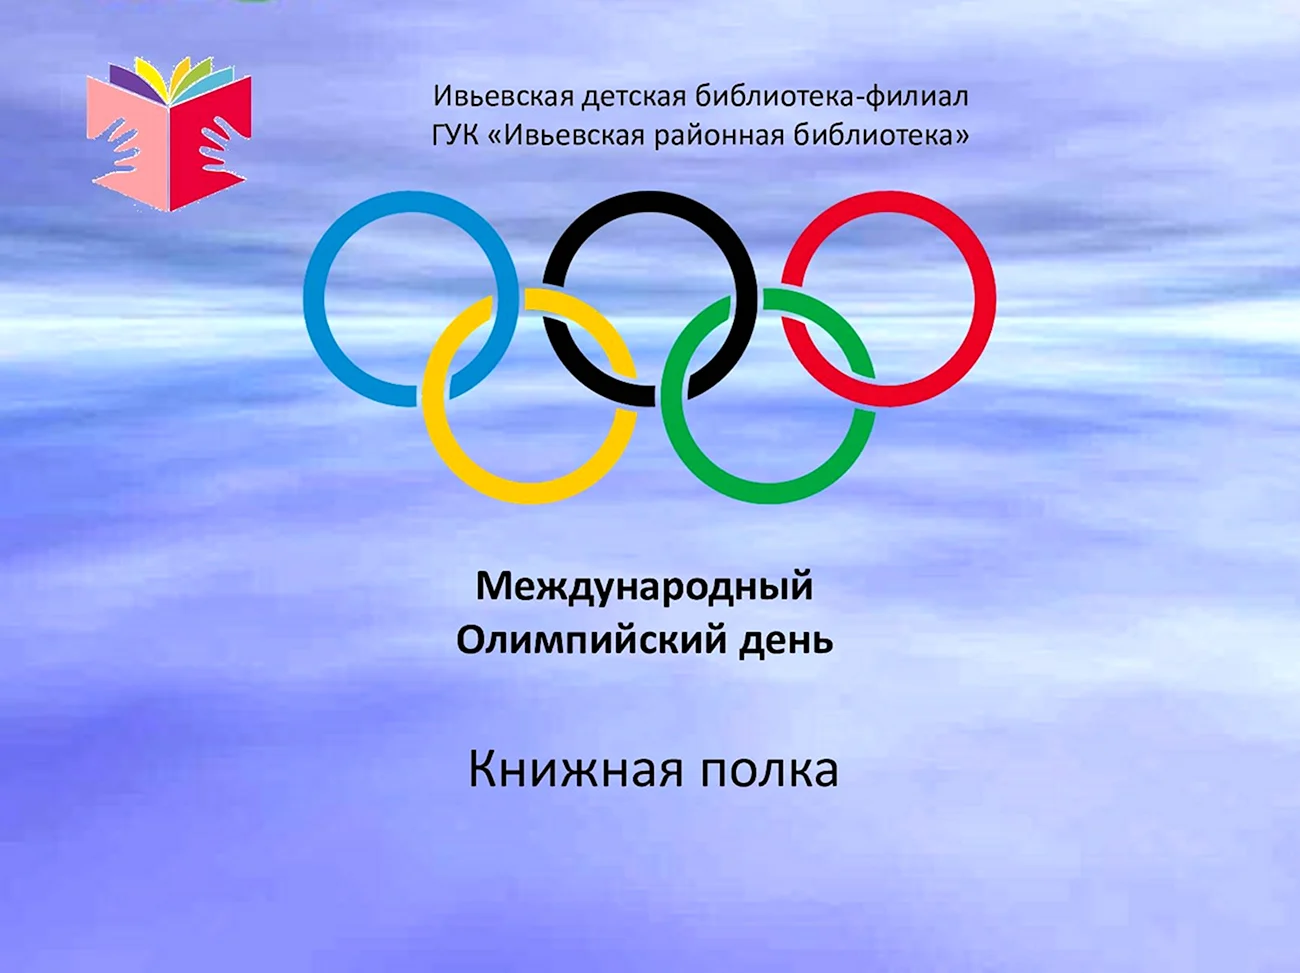 Олимпийский день. Поздравление